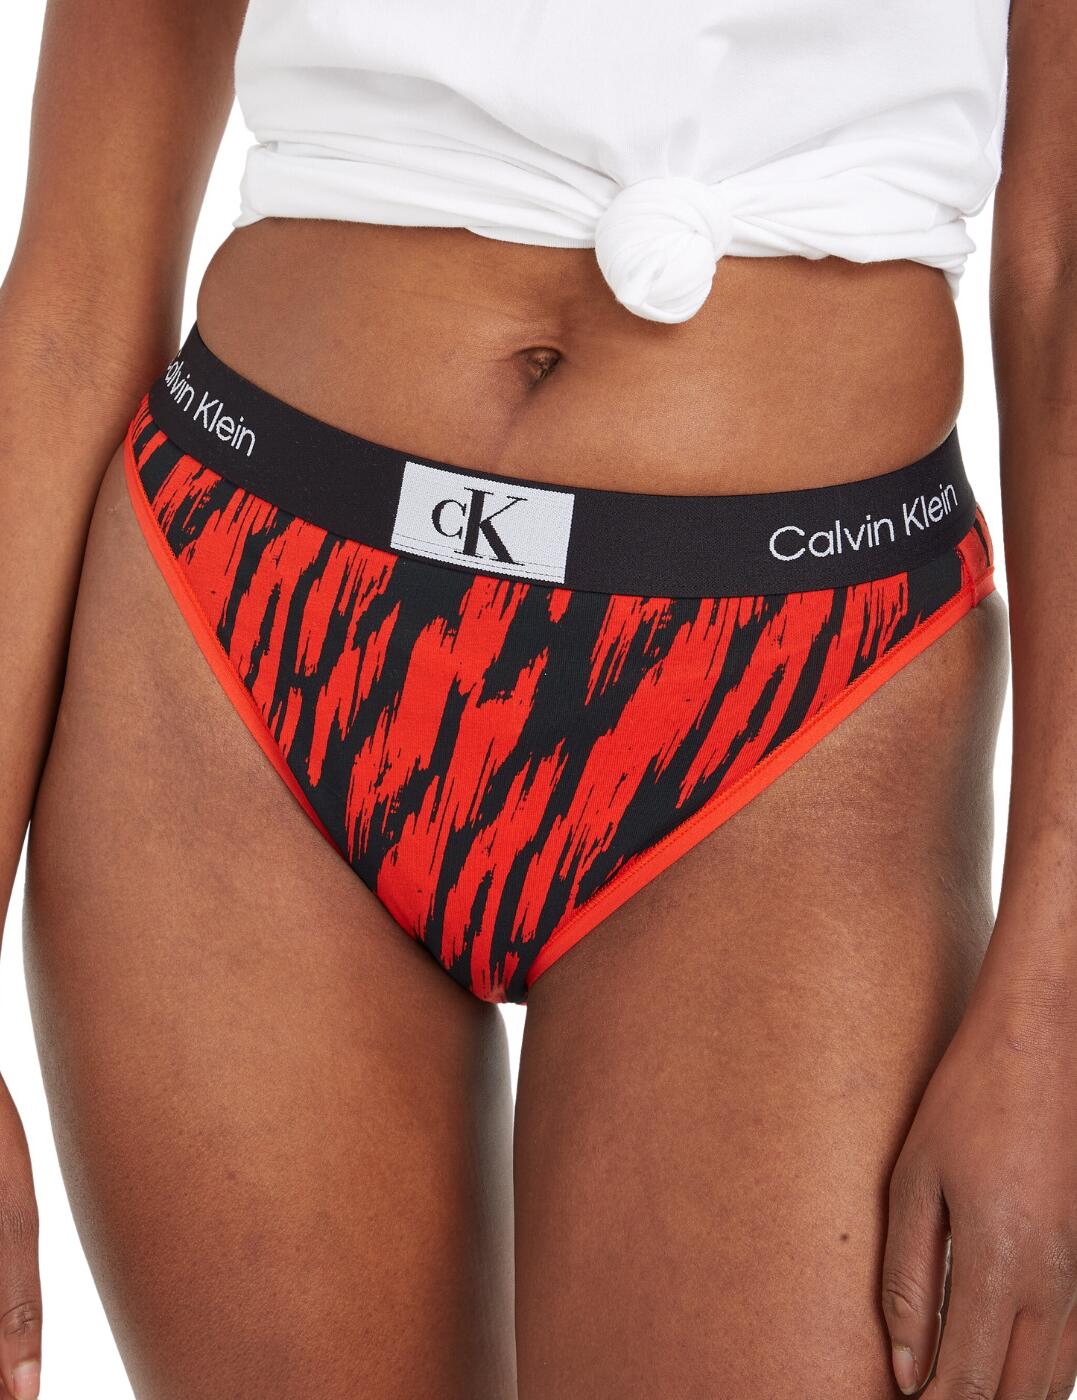 CK96 - Featured Shops - Underwear